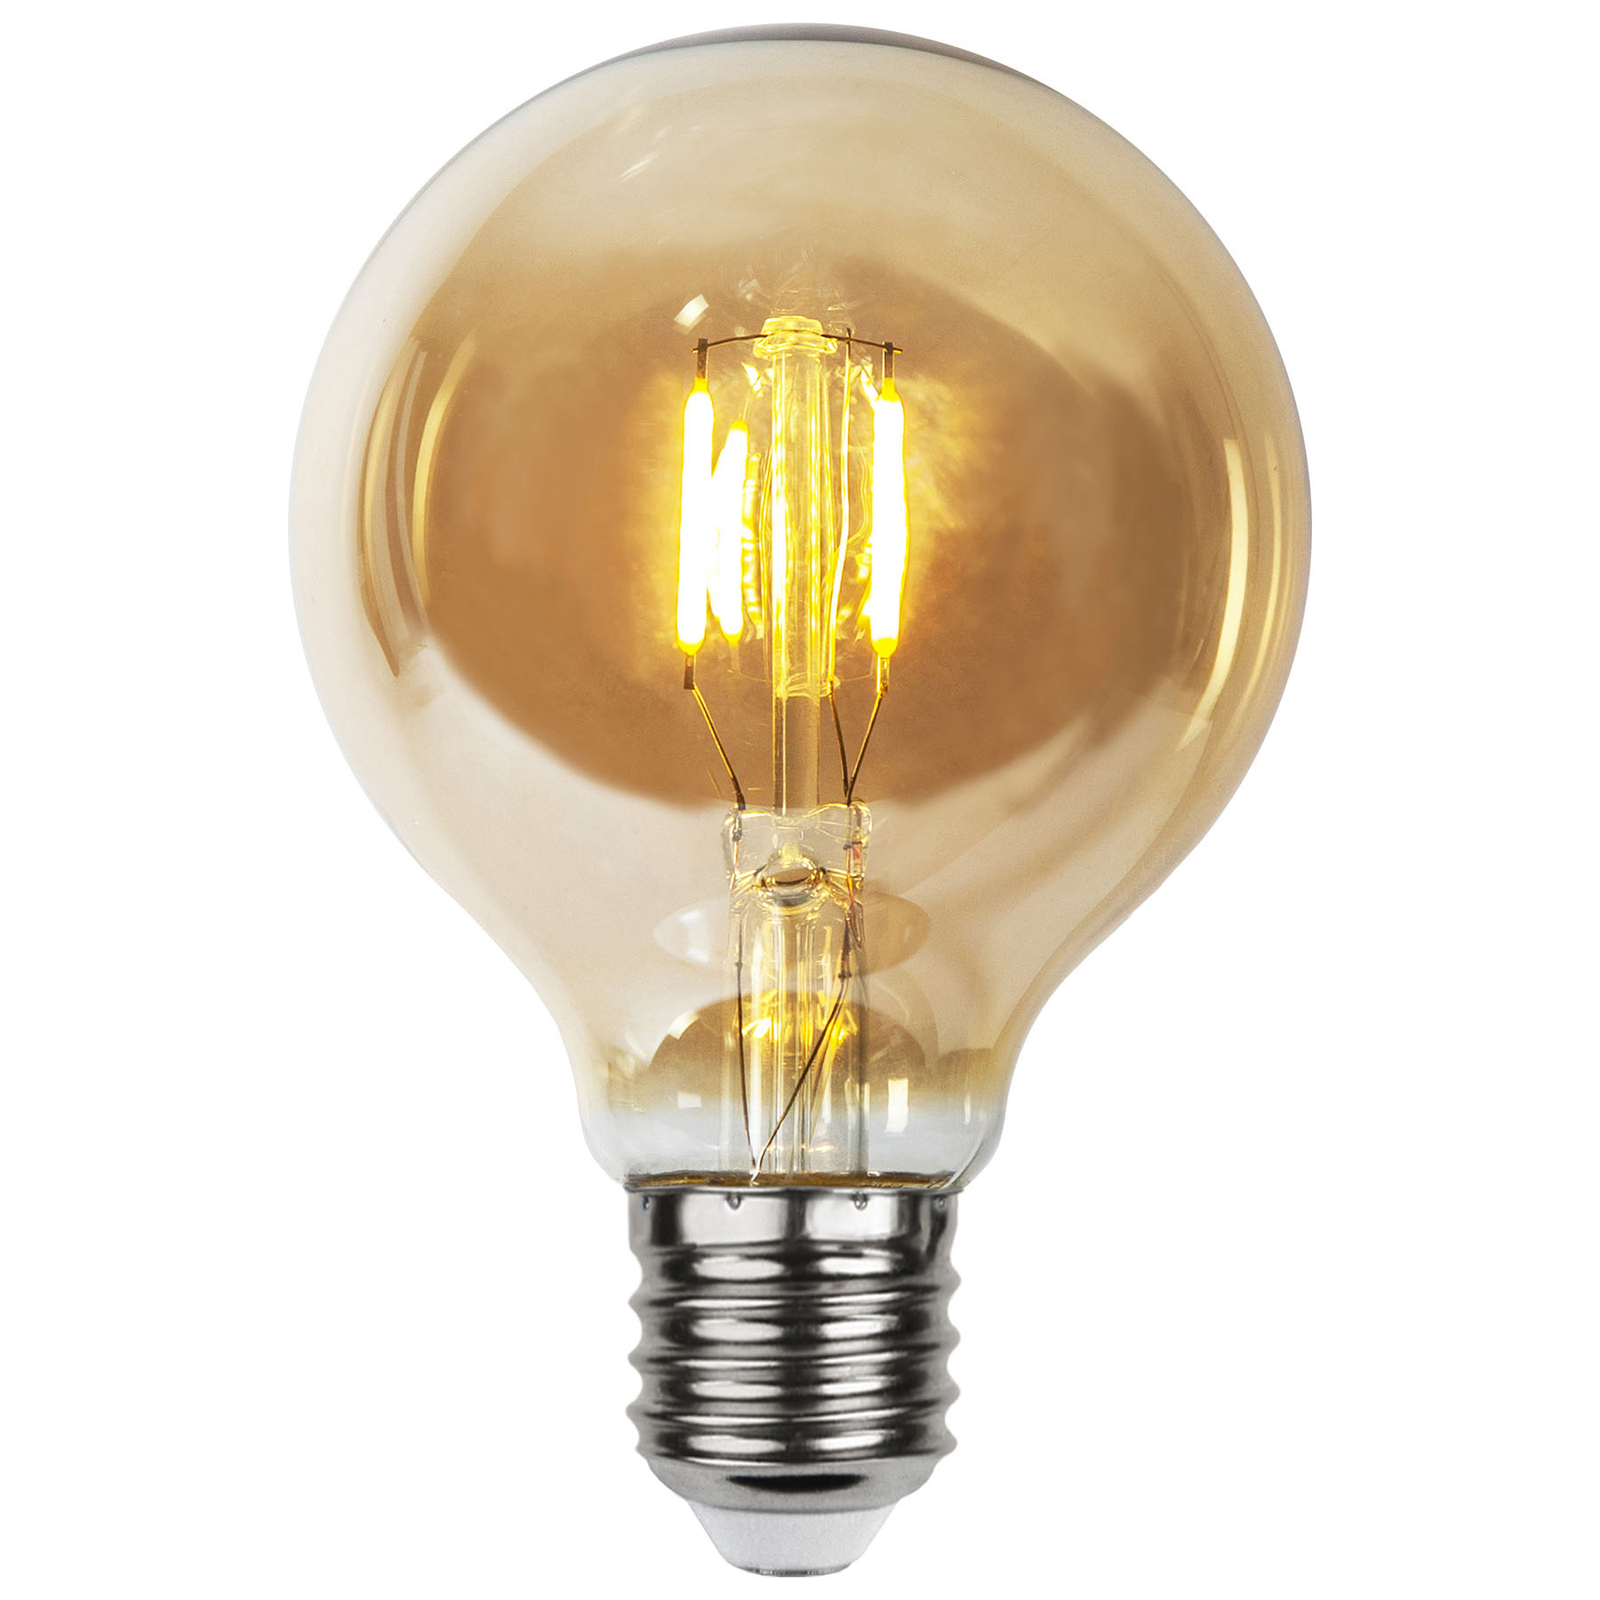 stijl Integreren achterstalligheid LED lamp E27 0,23W G80 filament 24V amber 4/set | Lampen24.be